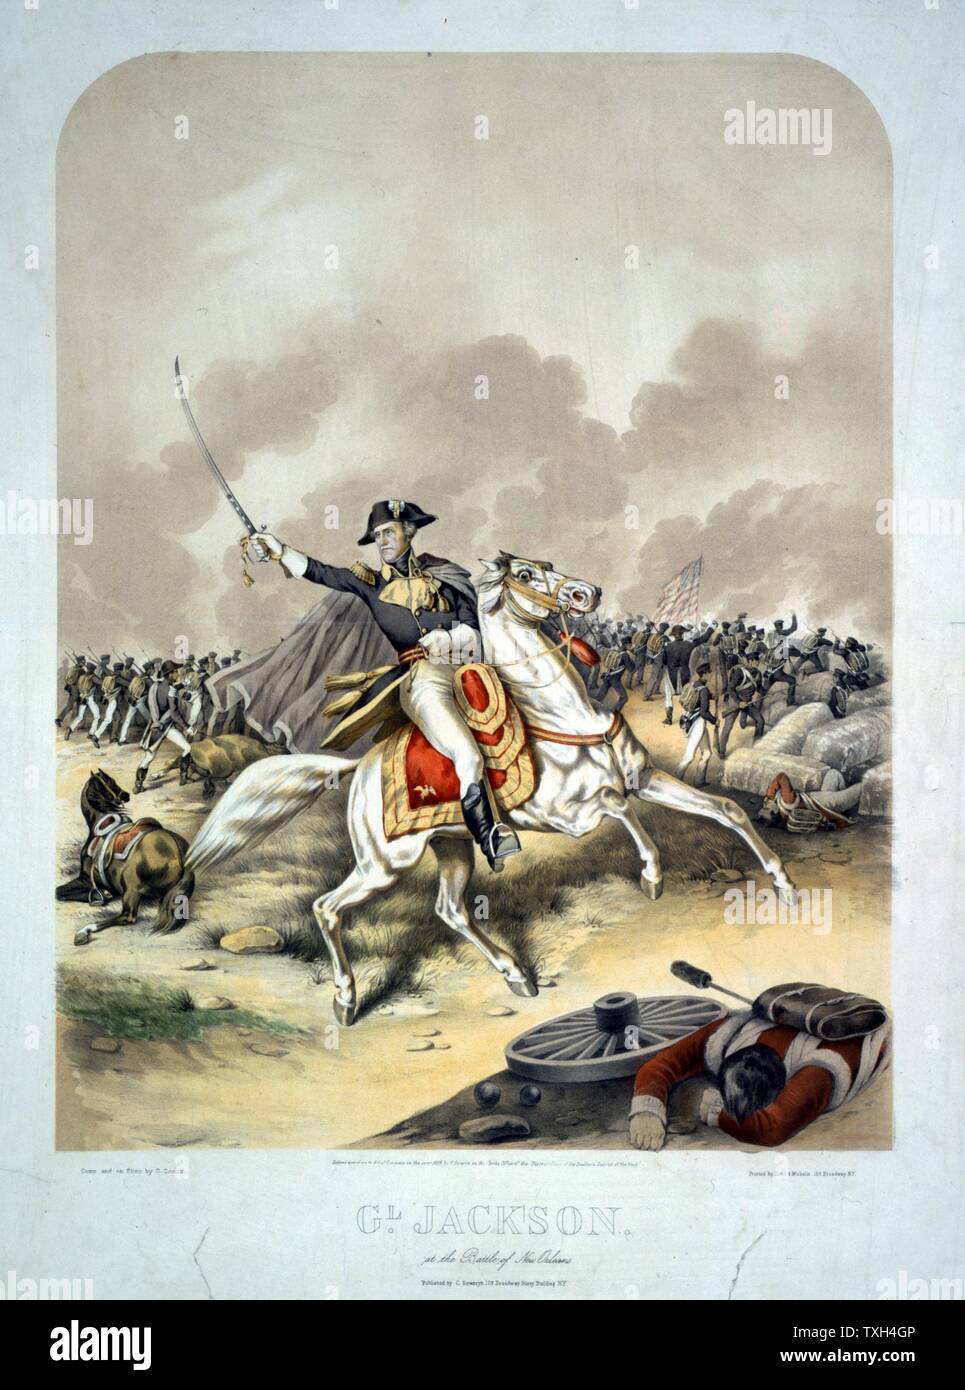 La guerre anglo-américaine 1812-1815 (Guerre de 1812) : le général Andrew Jackson à la bataille de la Nouvelle Orléans le 8 janvier 1815, montés sur des chevaux blancs, conduisant les forces américaines à la victoire Lithographie Banque D'Images